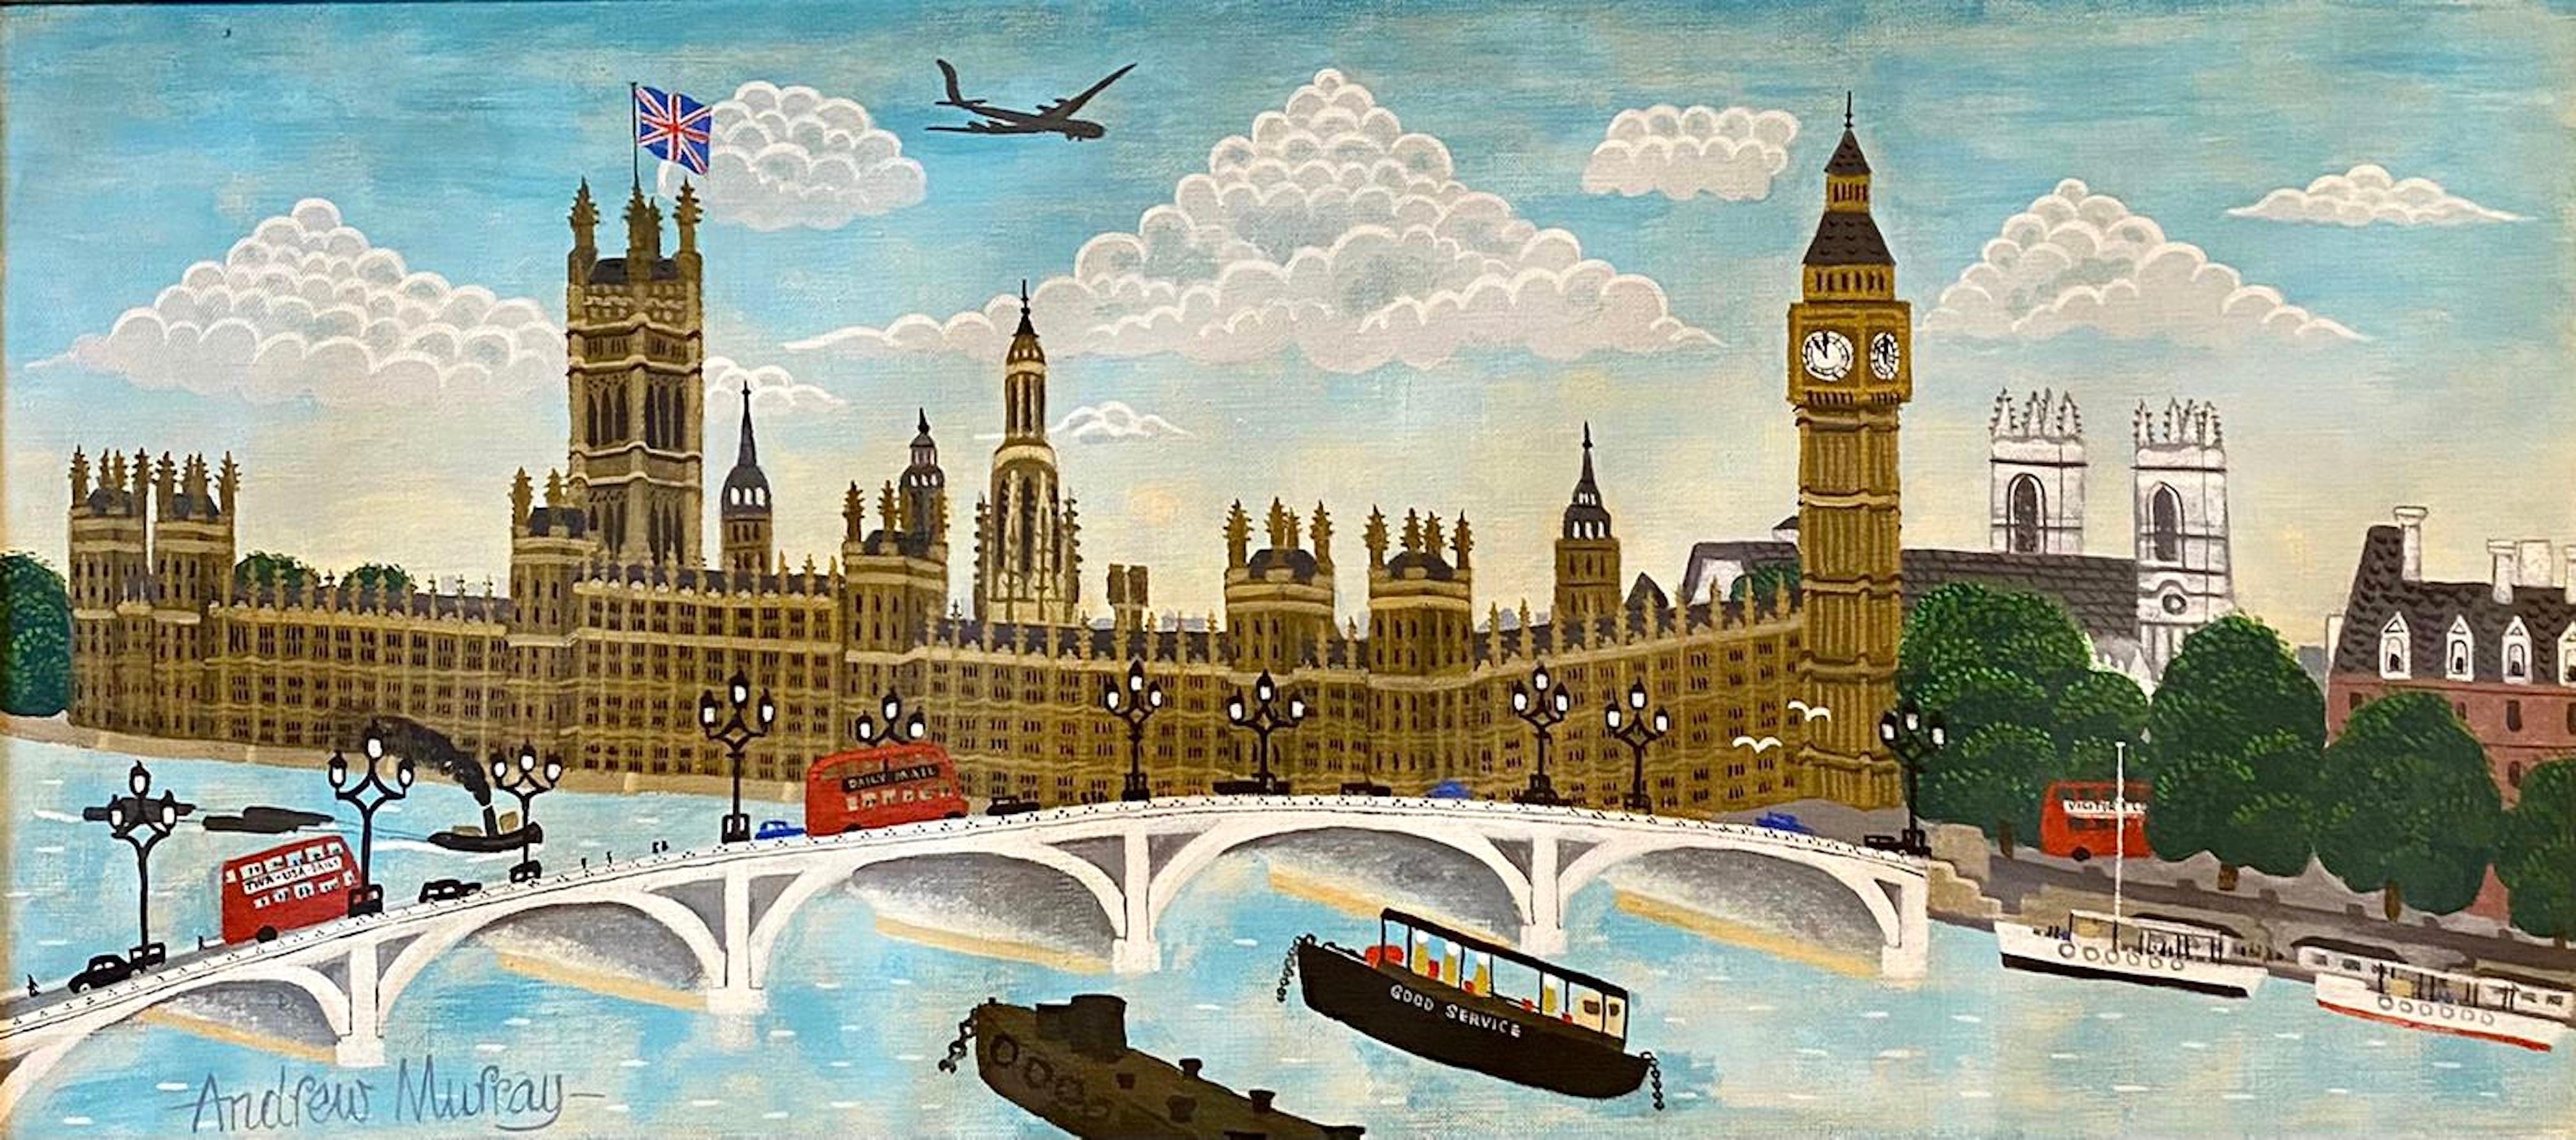 Figurative Painting Andrew Murray - Peinture à l'huile artisanale - Scène naïve de rue de Londres - Big Ben, Parlement, Union Jack 